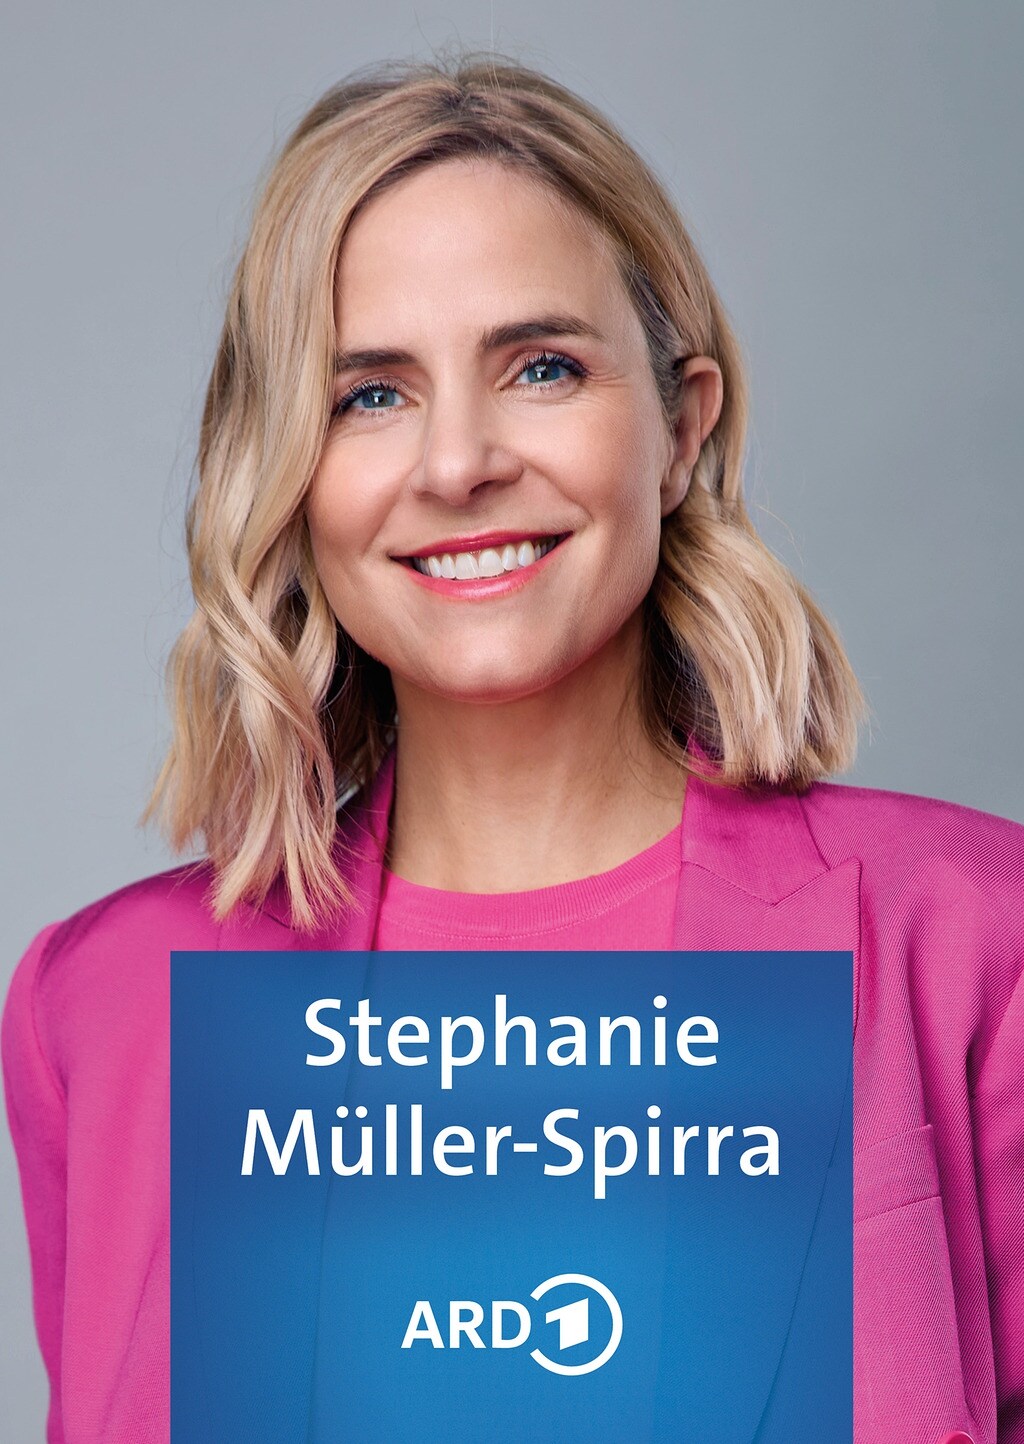 Müller spirra stephanie Stephanie Müller